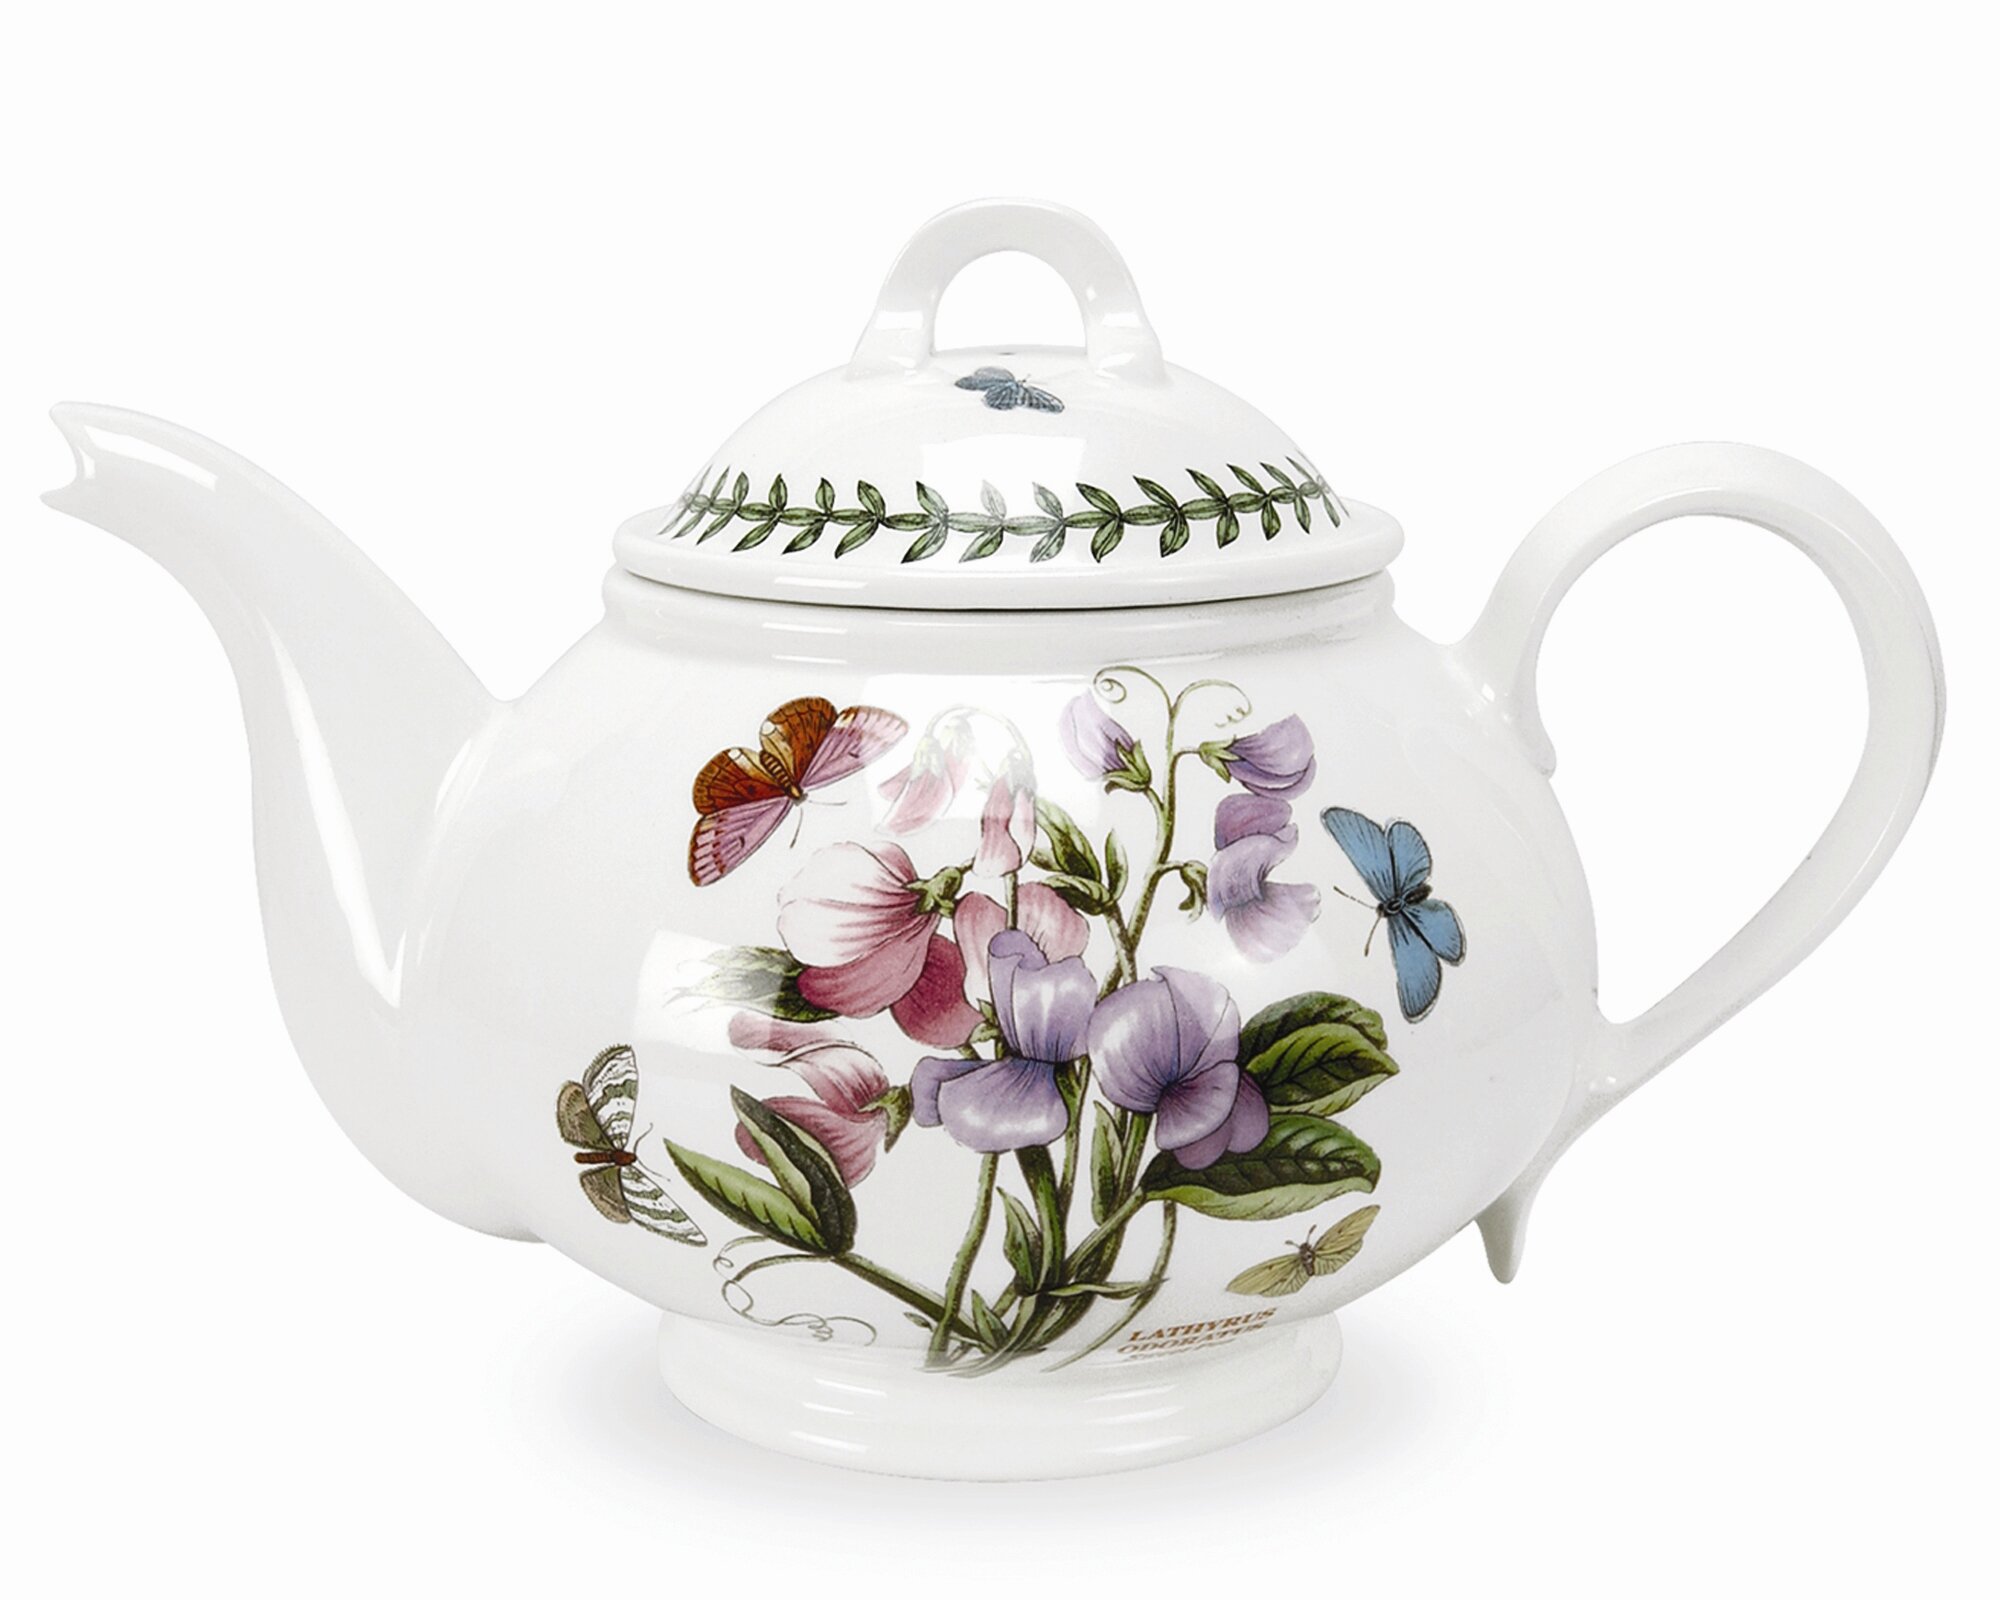 https://assets.wfcdn.com/im/38711691/compr-r85/4211/4211388/botanic-garden-113-qt-teapot.jpg